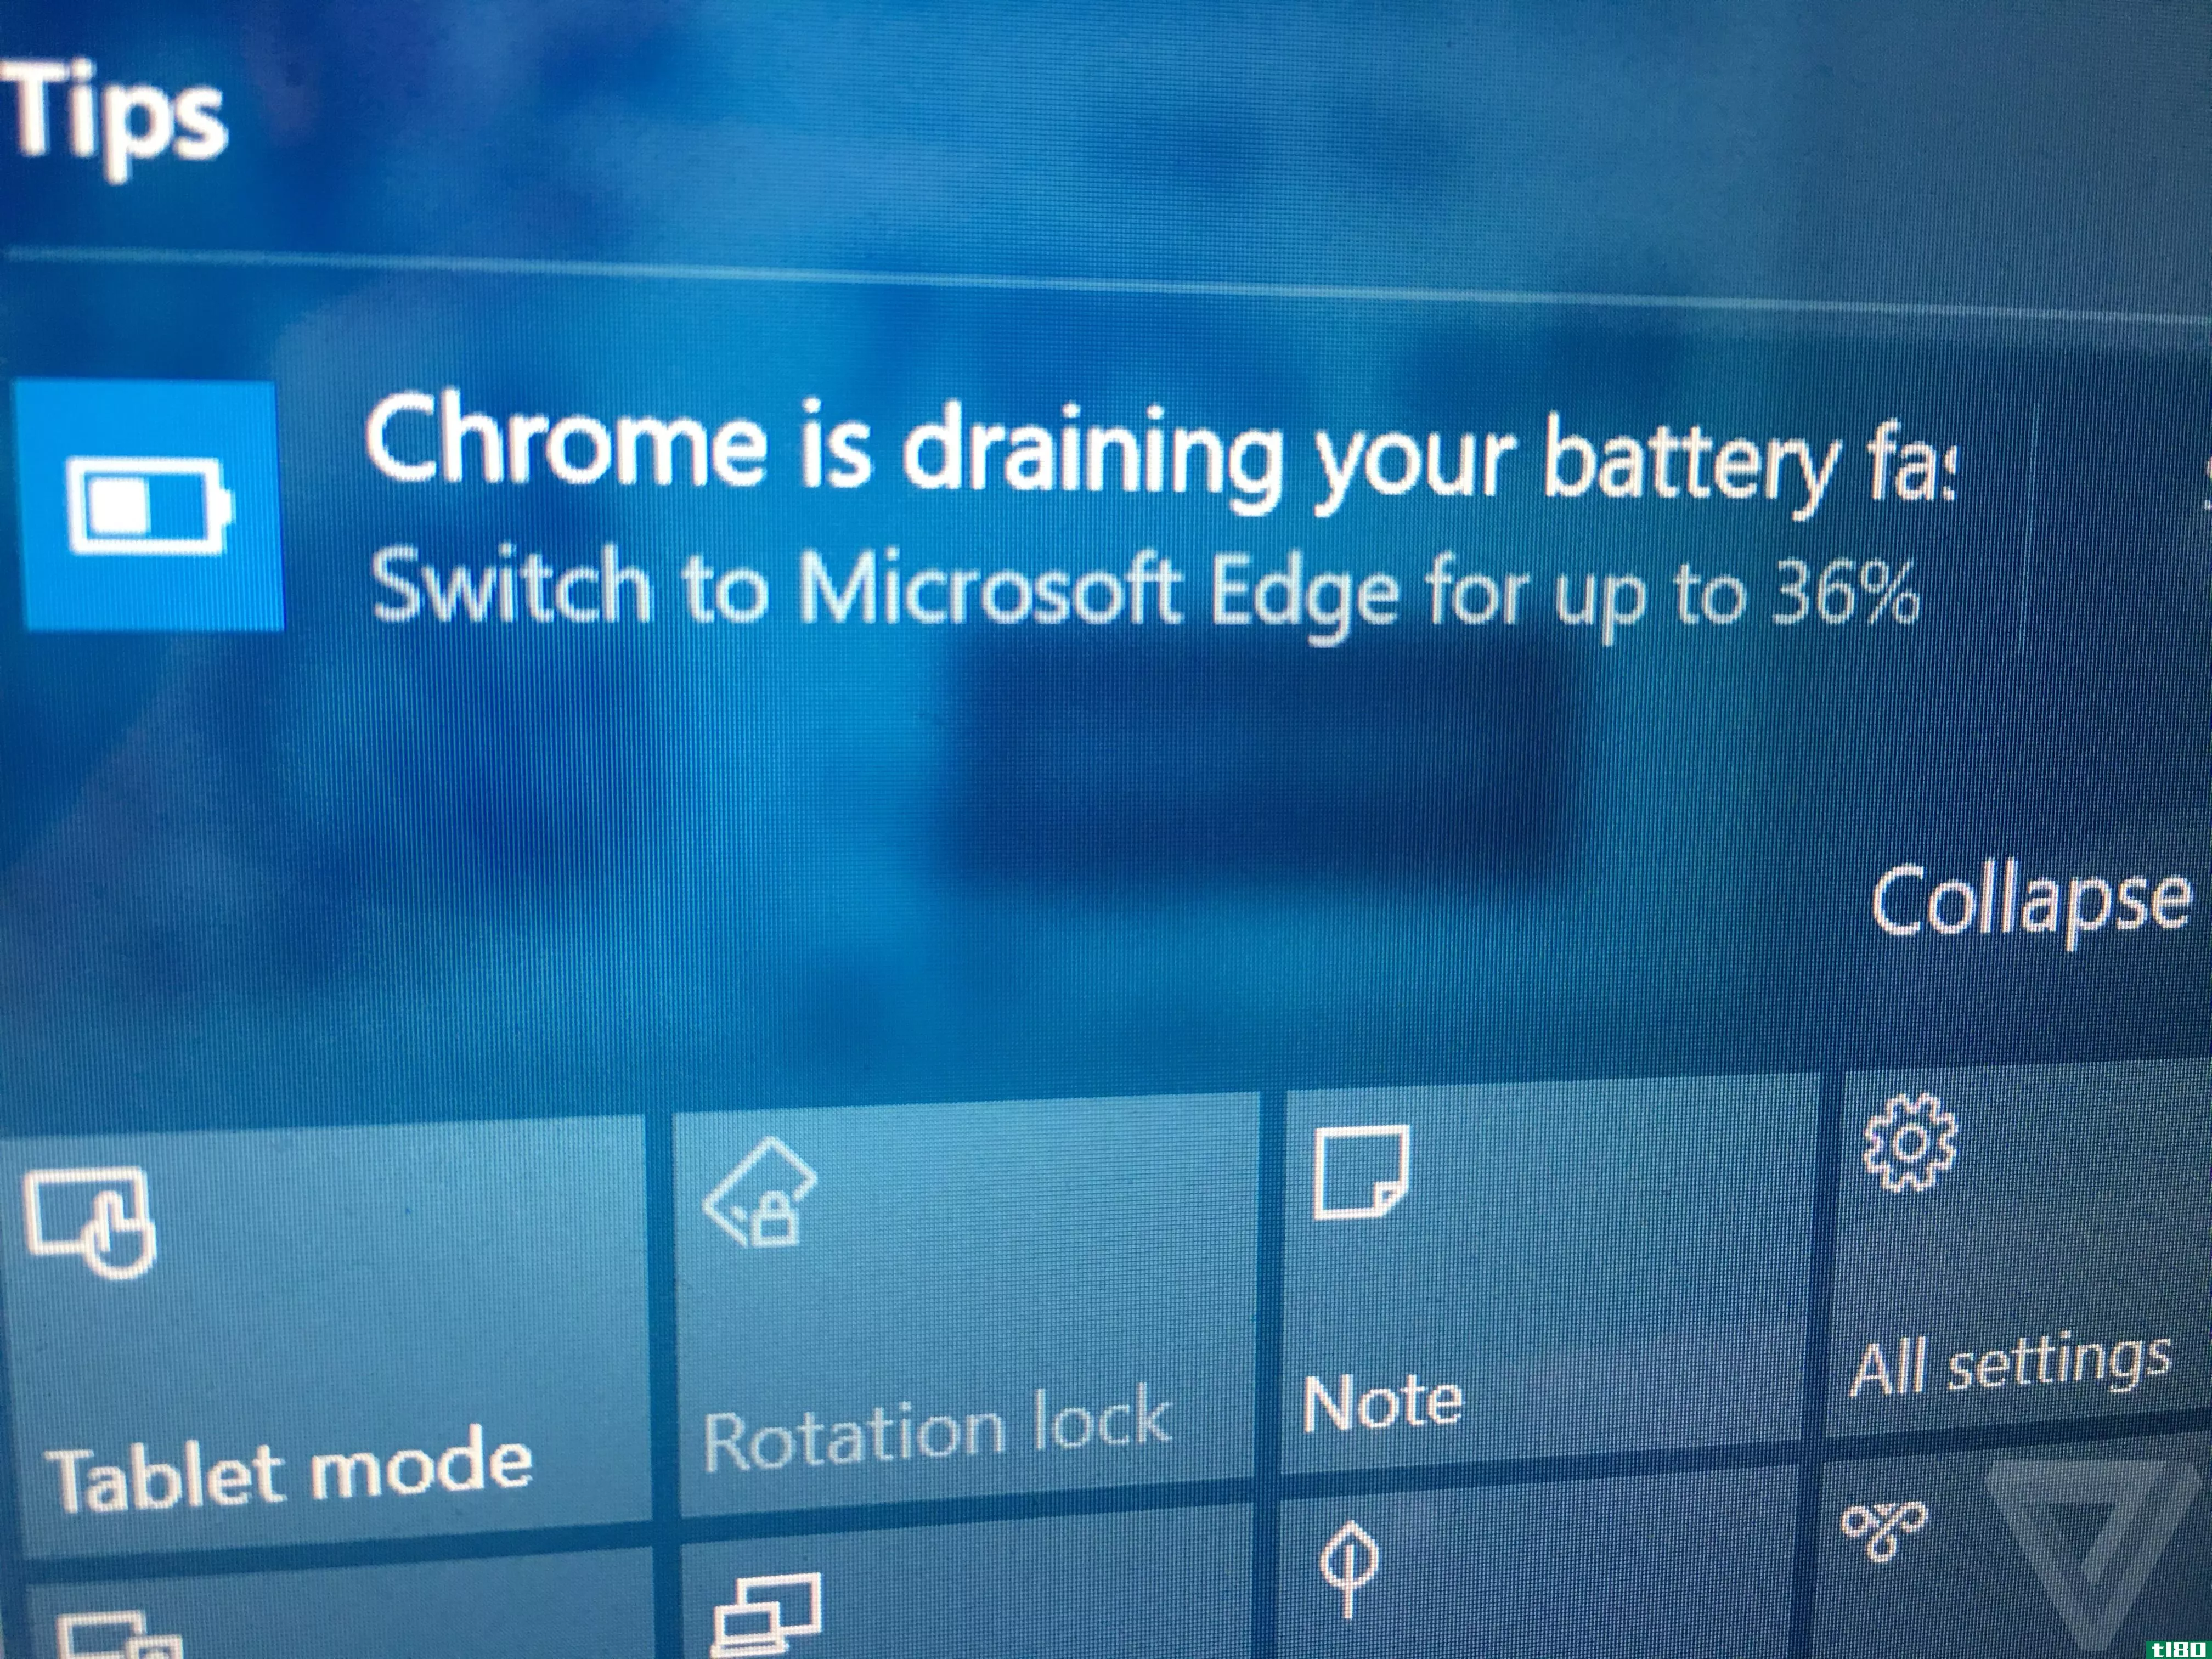 微软对抗chrome电池寿命的战争现在包括Windows10通知